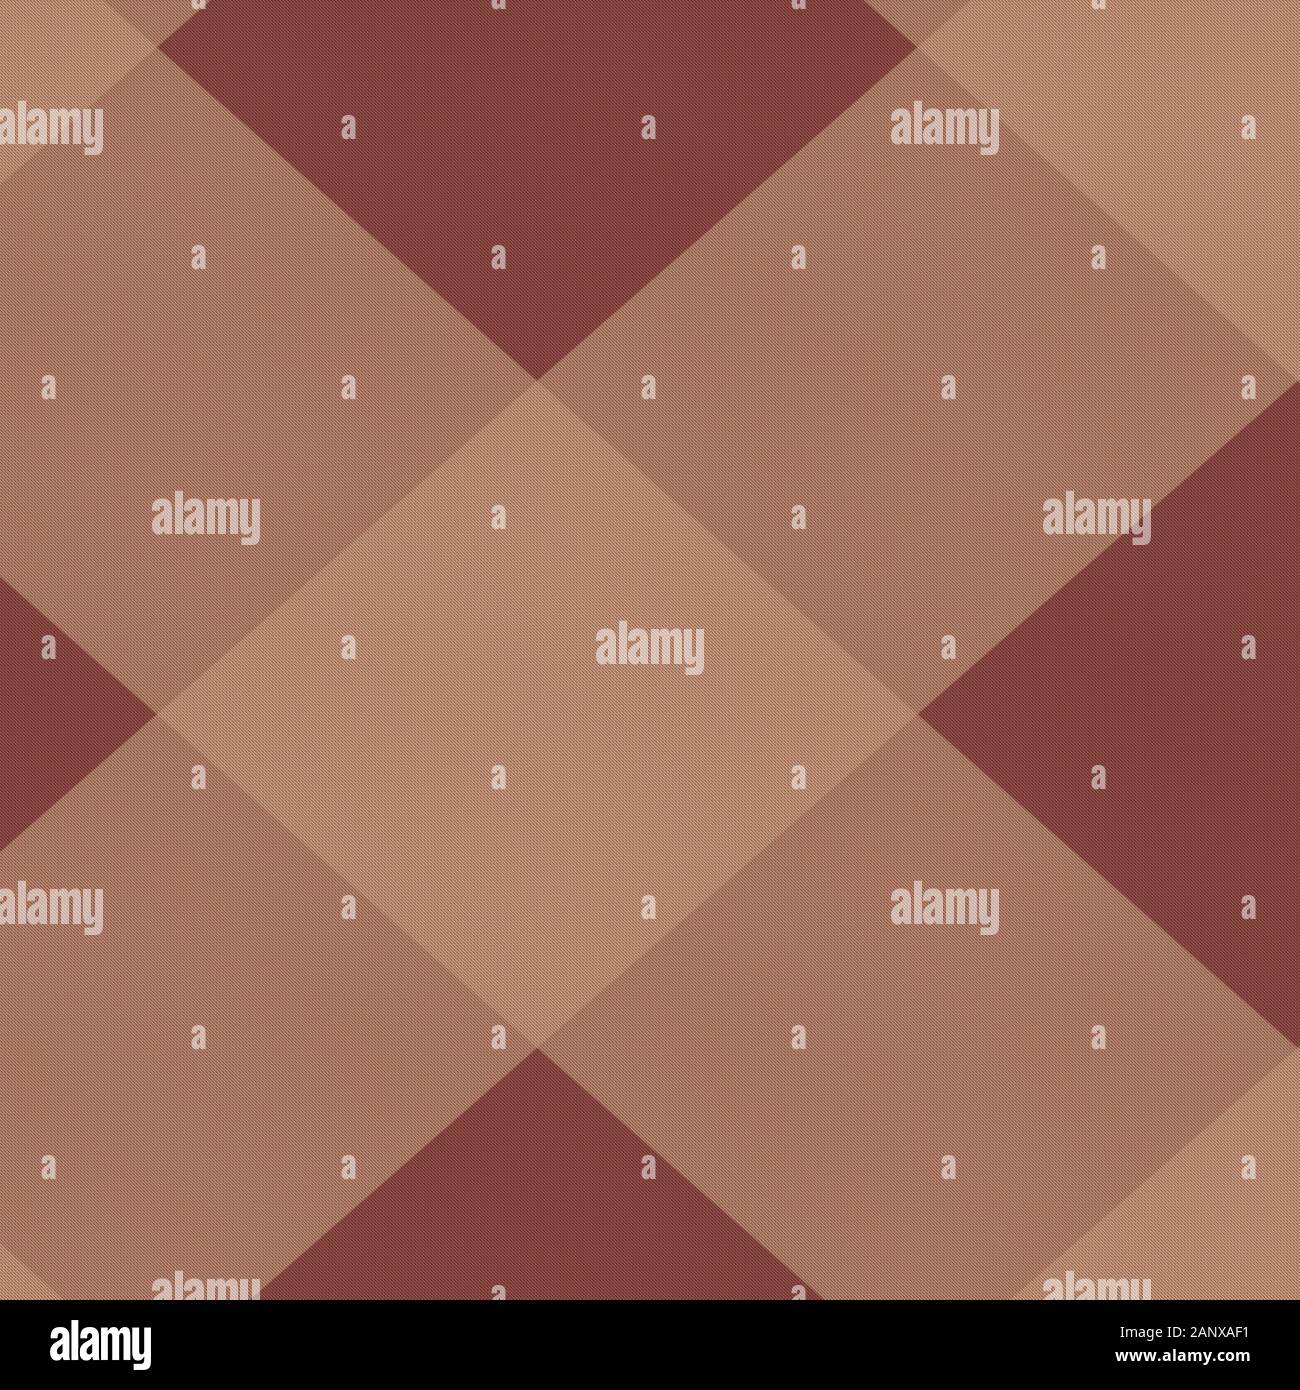 Abbildung: Diagonal-braune Plaid-TARTAN-Hintergrundbild. 12 x 12 digitale Papiergrafik für Seitenelemente und Designs. Größeres Muster in Medium. Stockfoto